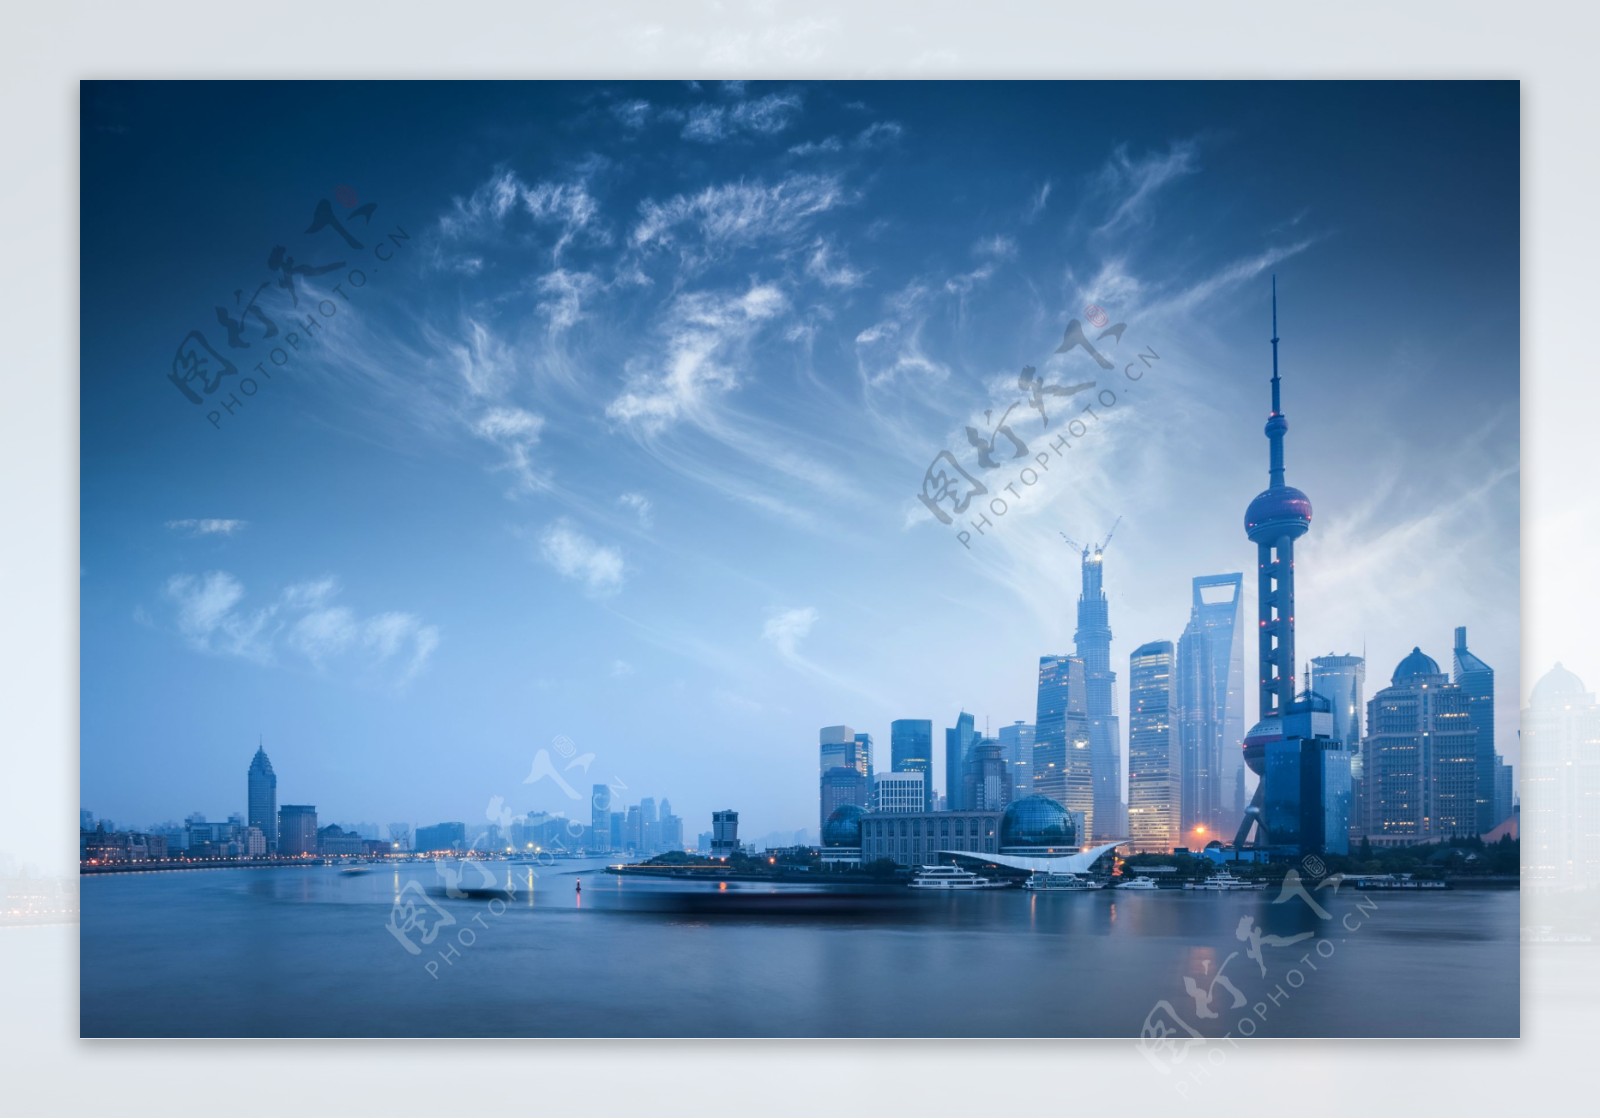 上海都市美化图图片